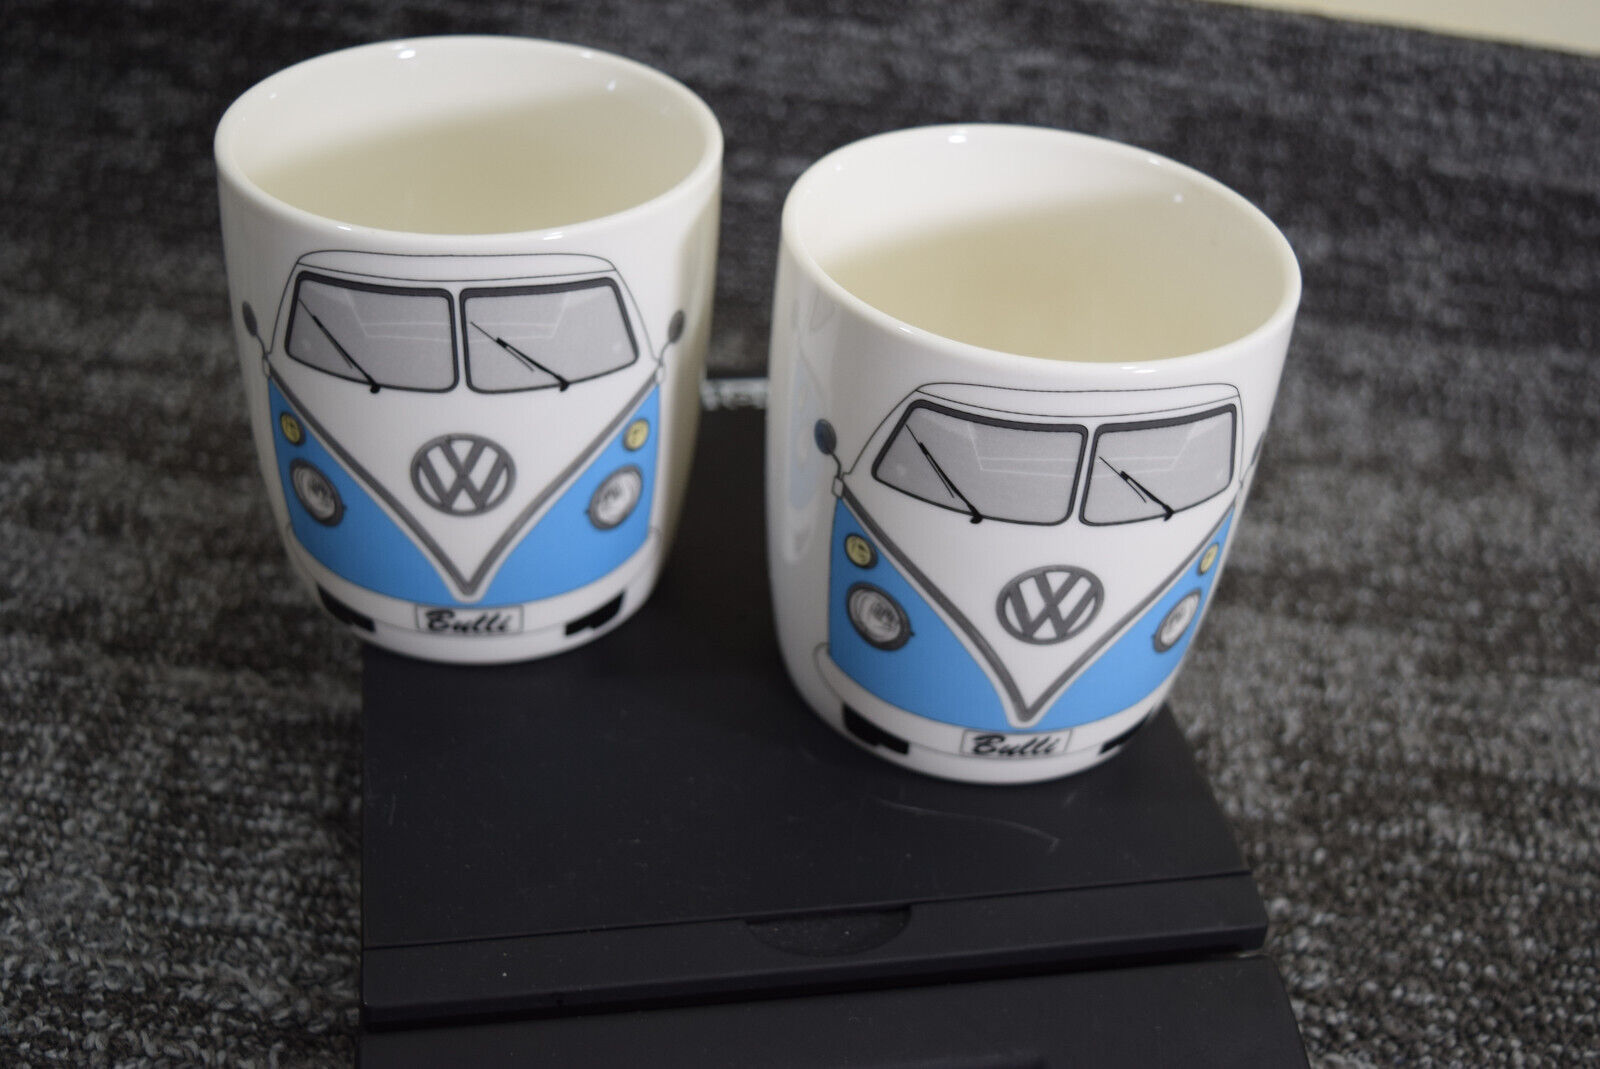 2 Volkswagen Camper Van Bus Blue White Brisa Coffee Mugs Germany 14oz VW Driver